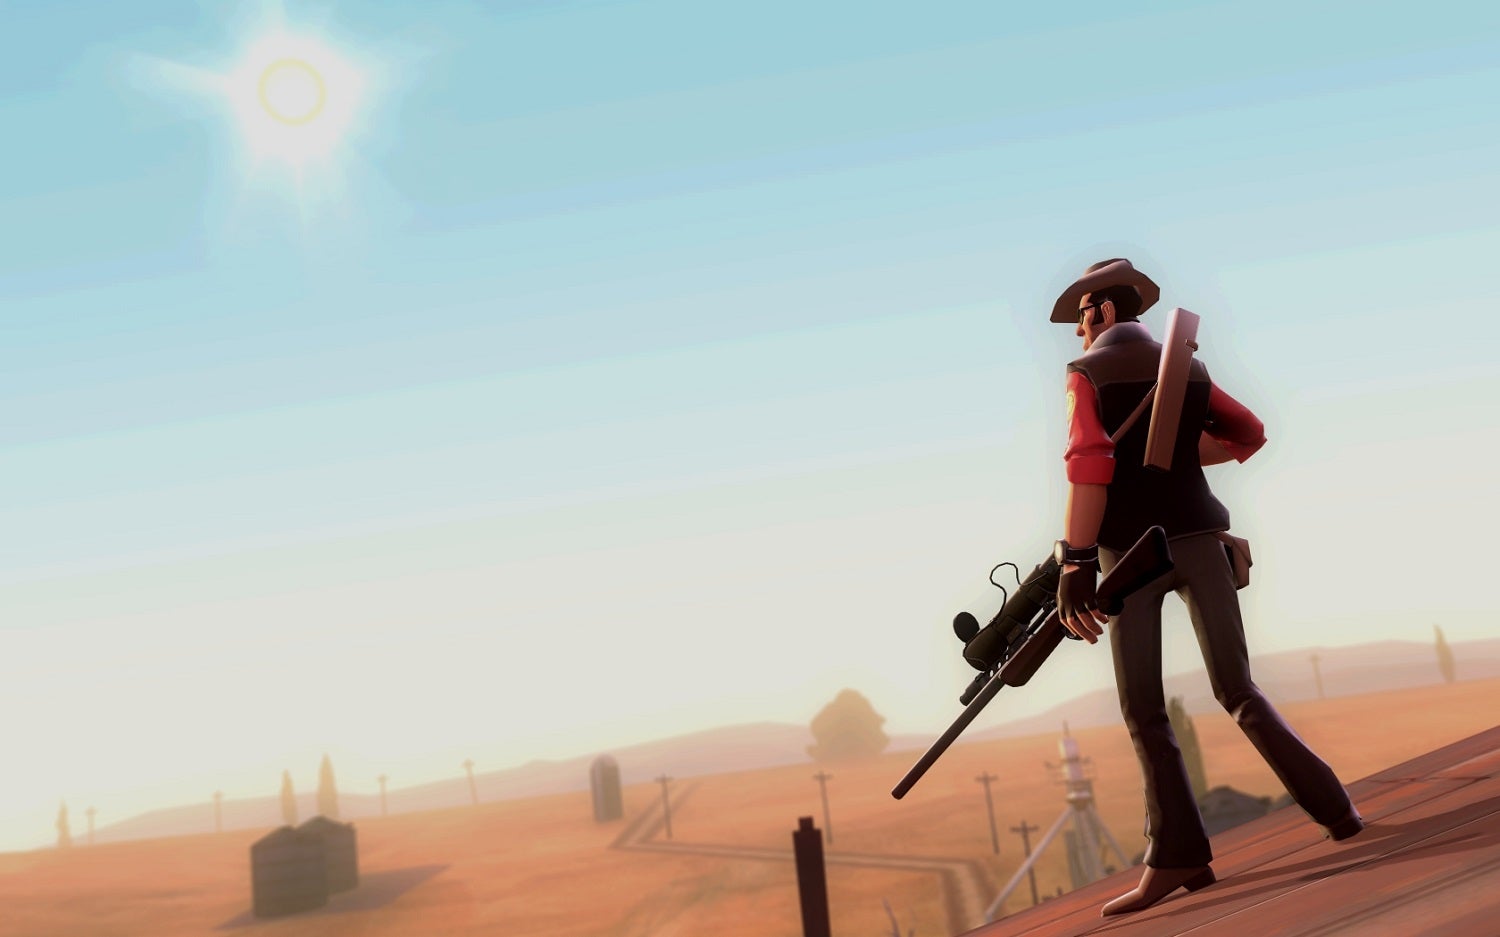 Obrazki dla Dziesięć lat po premierze, Team Fortress 2 czeka spora aktualizacja